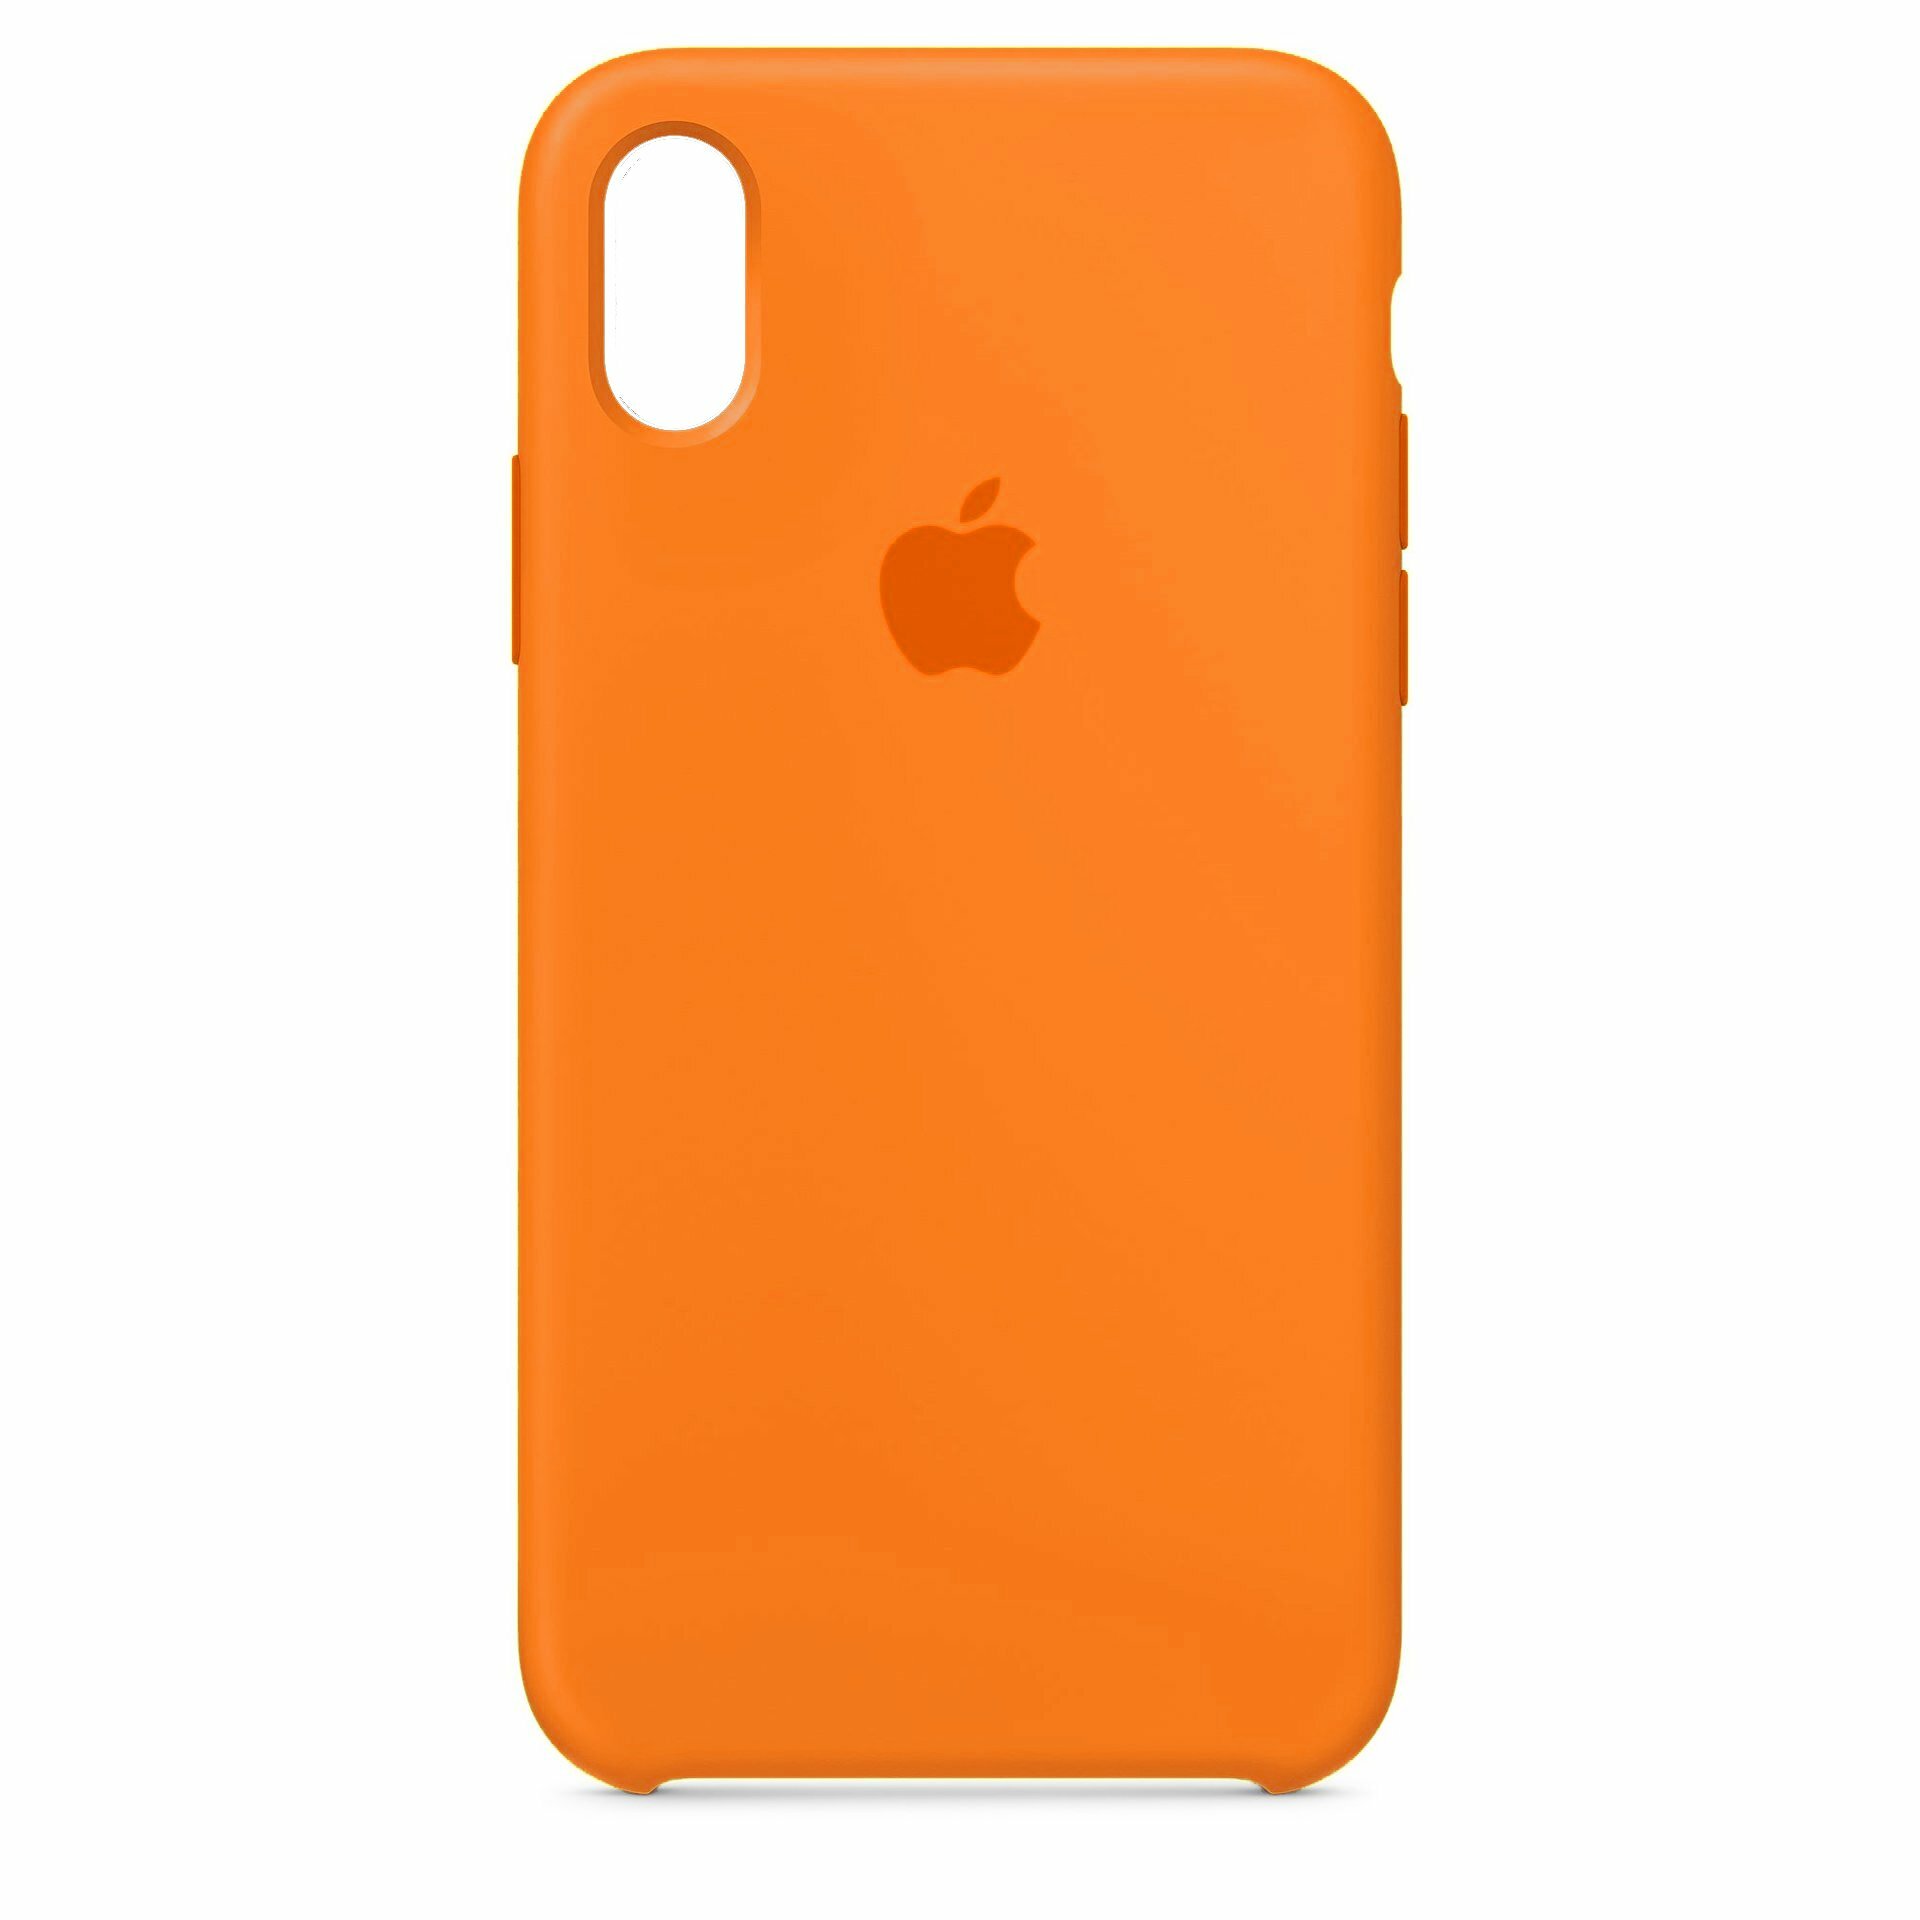 Чехол Aksberry для Apple iPhone XS Max оранжевый